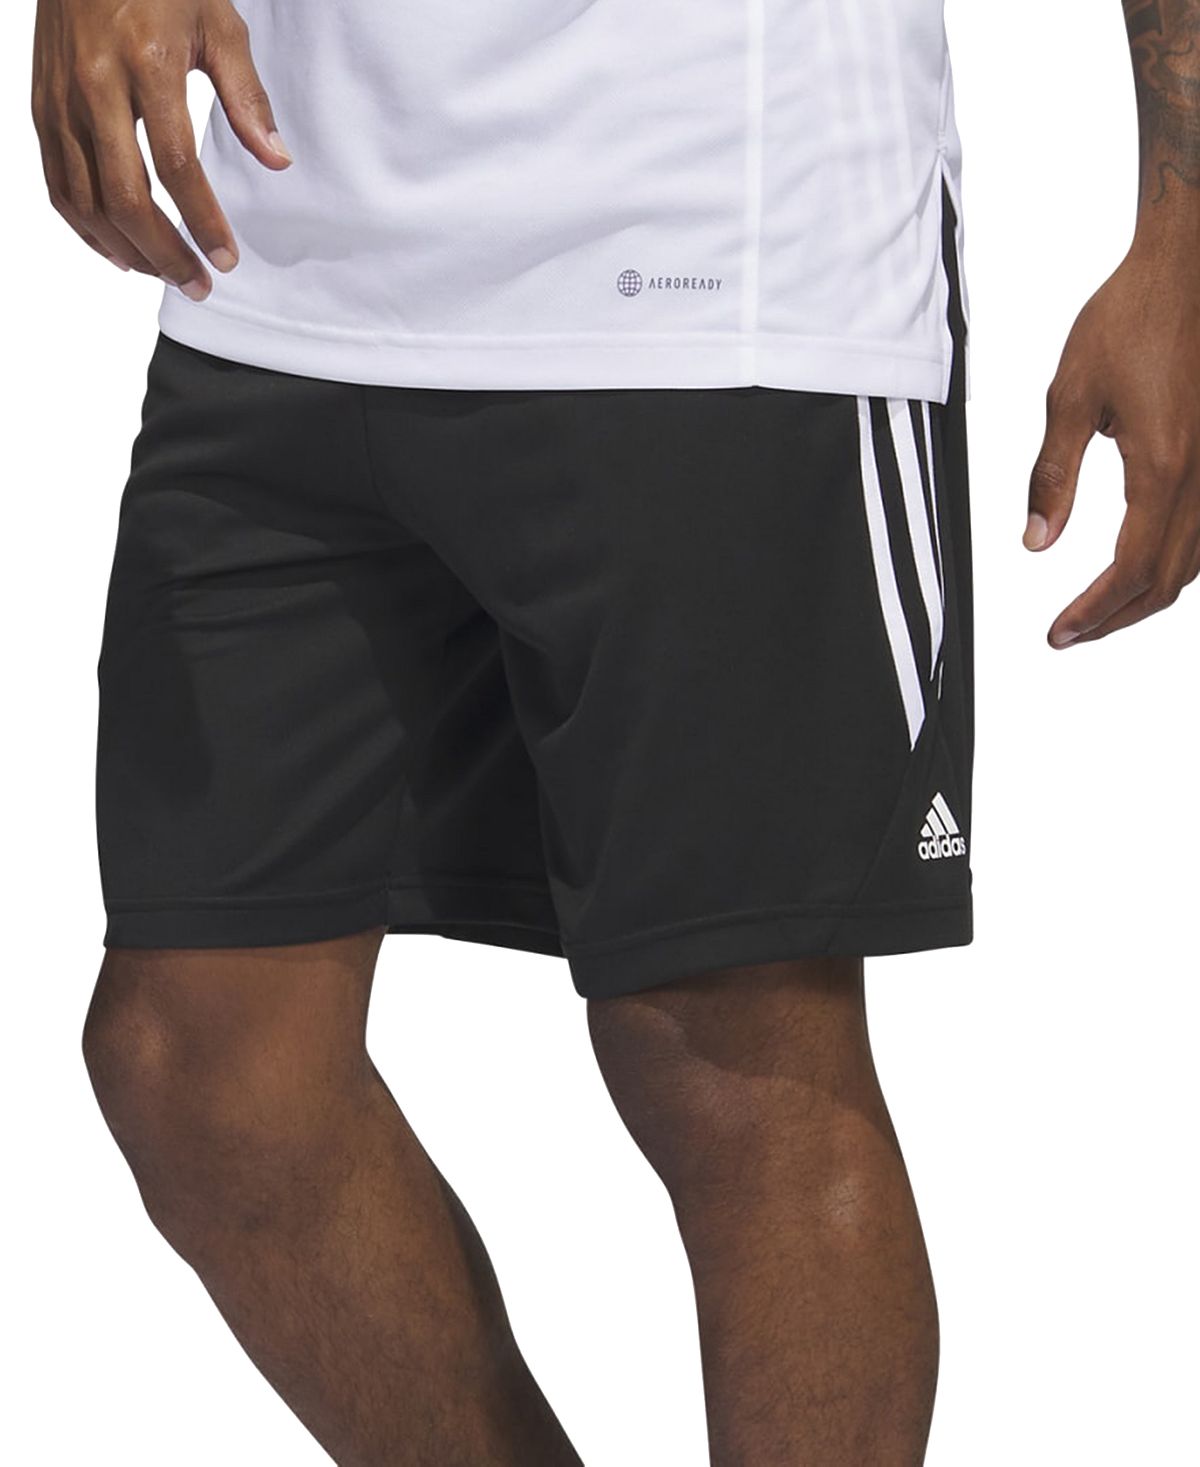 Мужские баскетбольные шорты Legends с 3 полосками 11 дюймов adidas толстовка adidas stadium fleece badge of sport sweatshirt бежевый